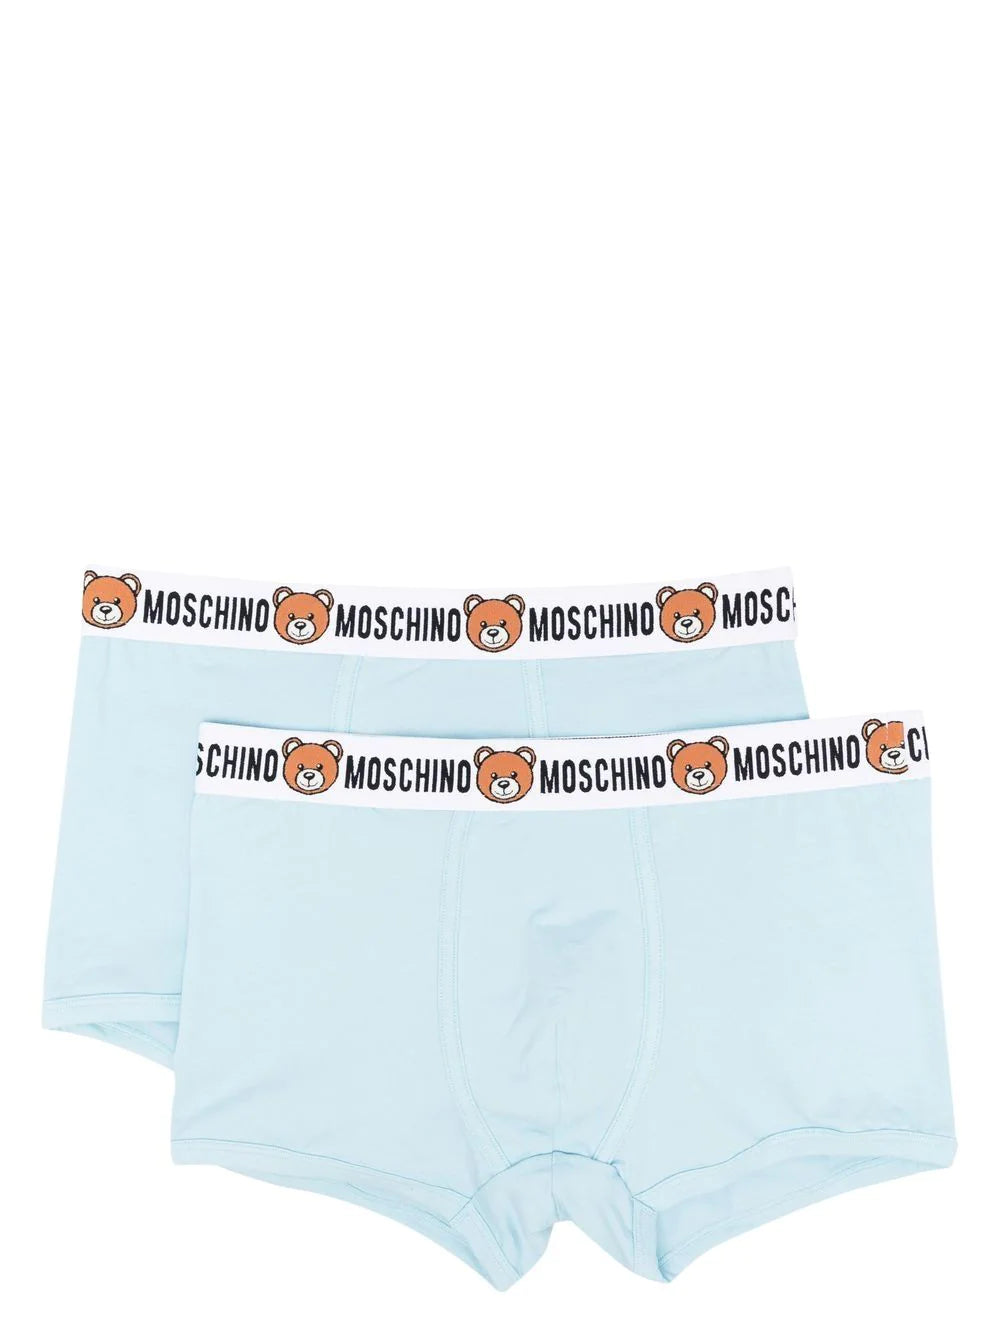 Moschino underwear Men XL size White Boxer pants 2 pieces